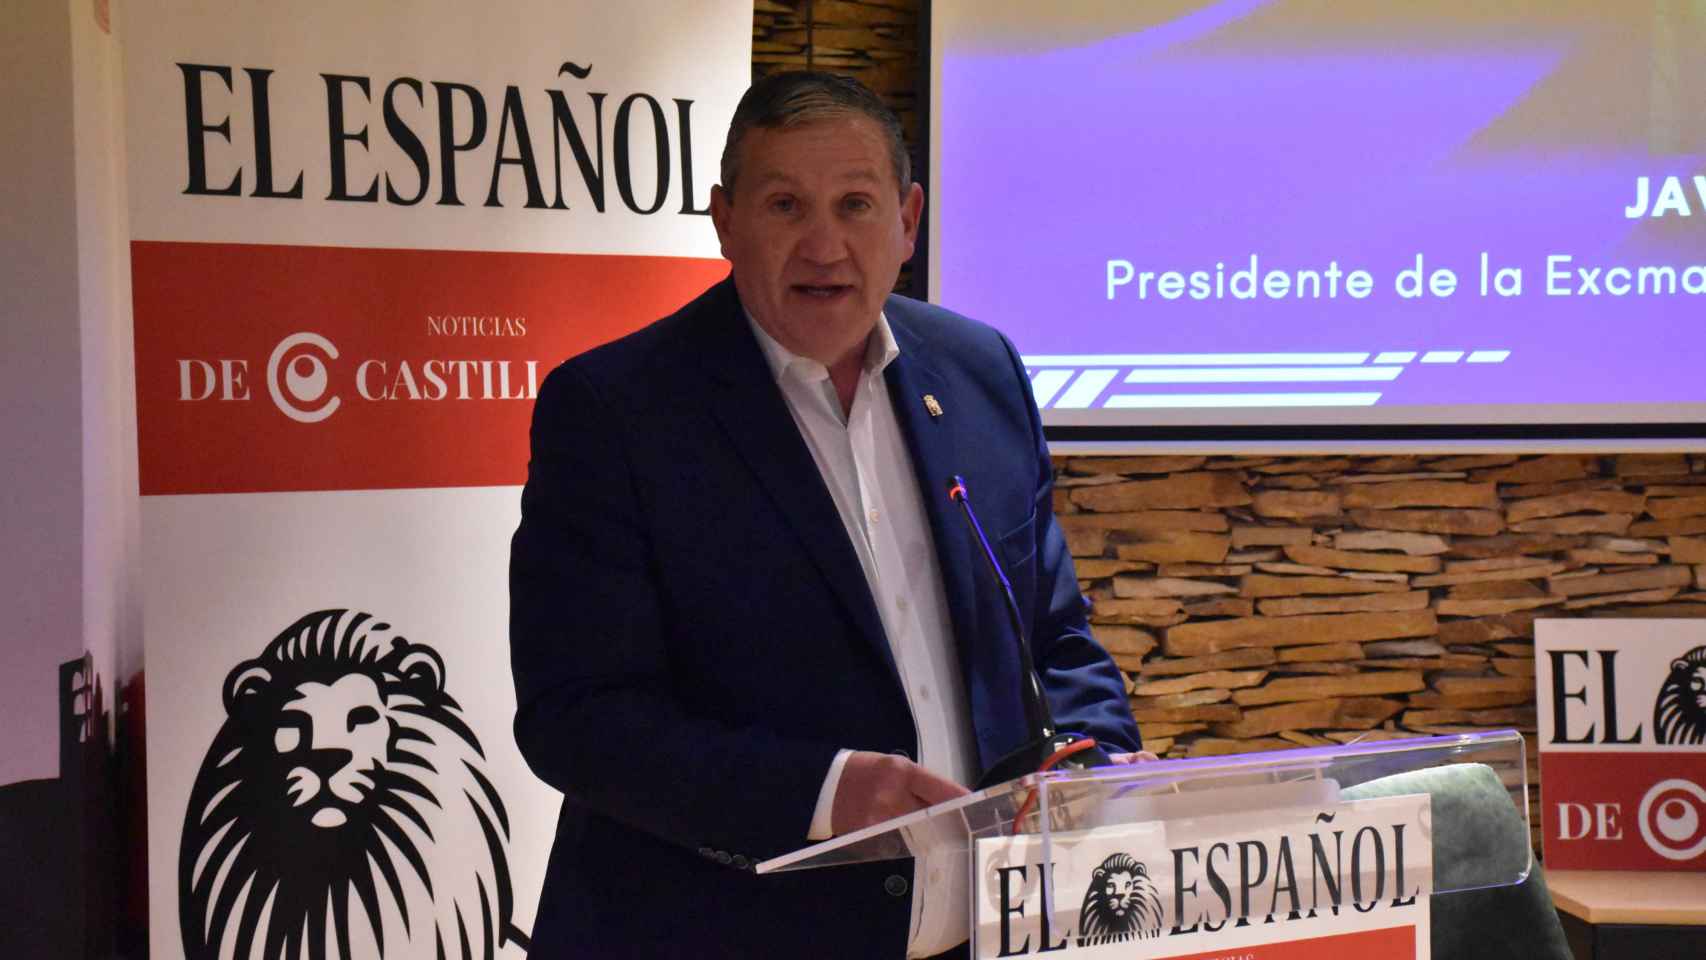 El presidente de la Diputación de Zamora, Javier Faúndez, durante su intervención en el Foro 'Zamora: innovación y crecimiento empresarial', este miércoles en la Casa de Zamora de Madrid.